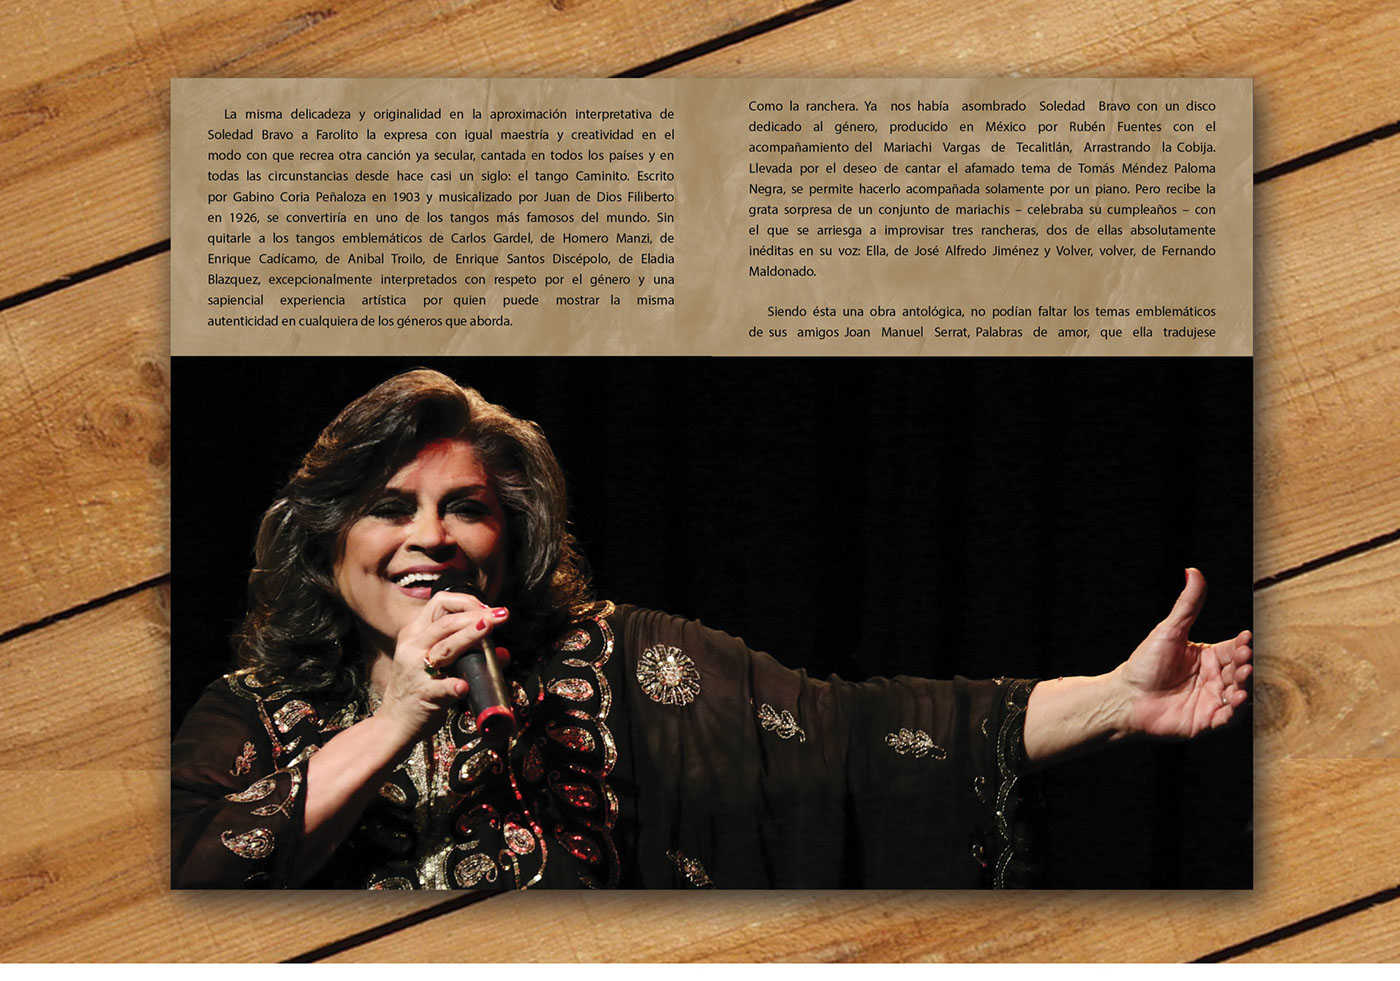 Soledad Bravo Singer Album cover Latin design art